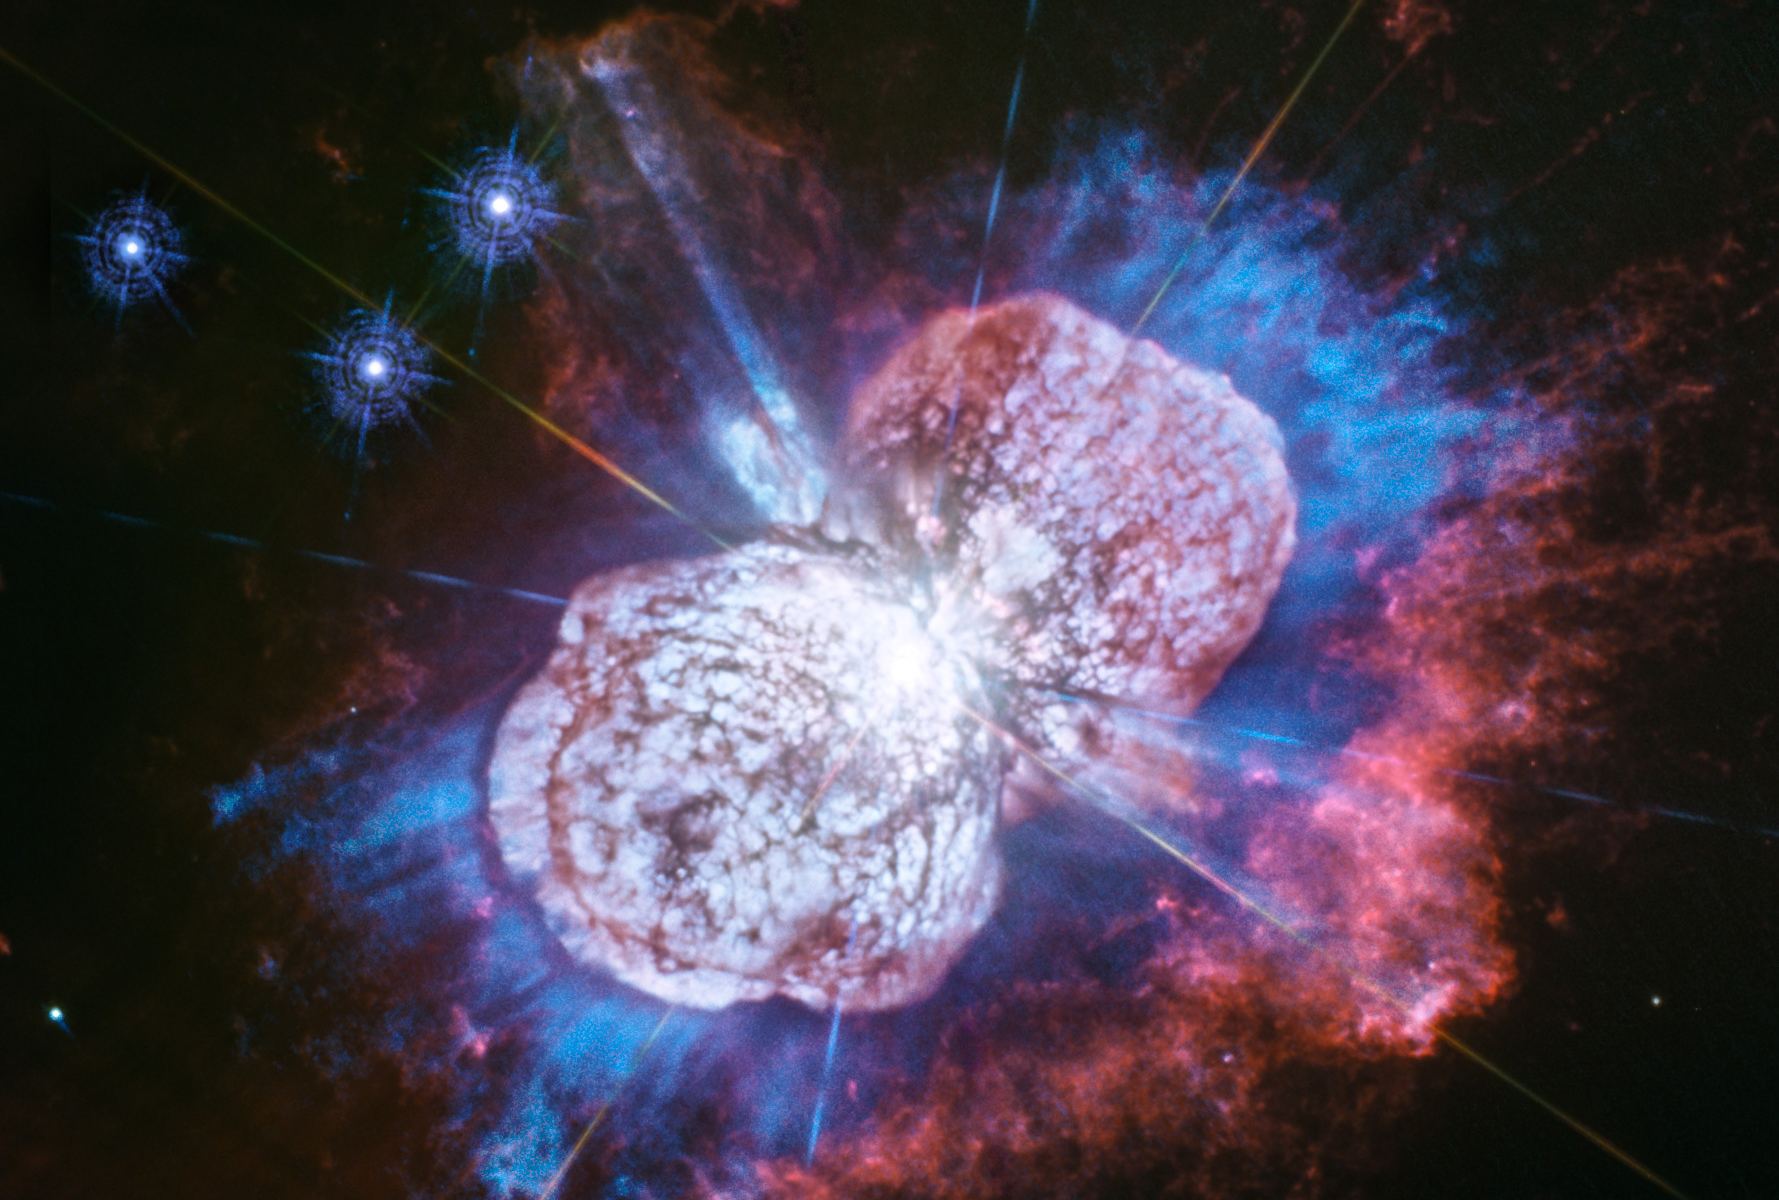 Hubble has a Brand New Picture of the Massive Star Eta Carinae. It